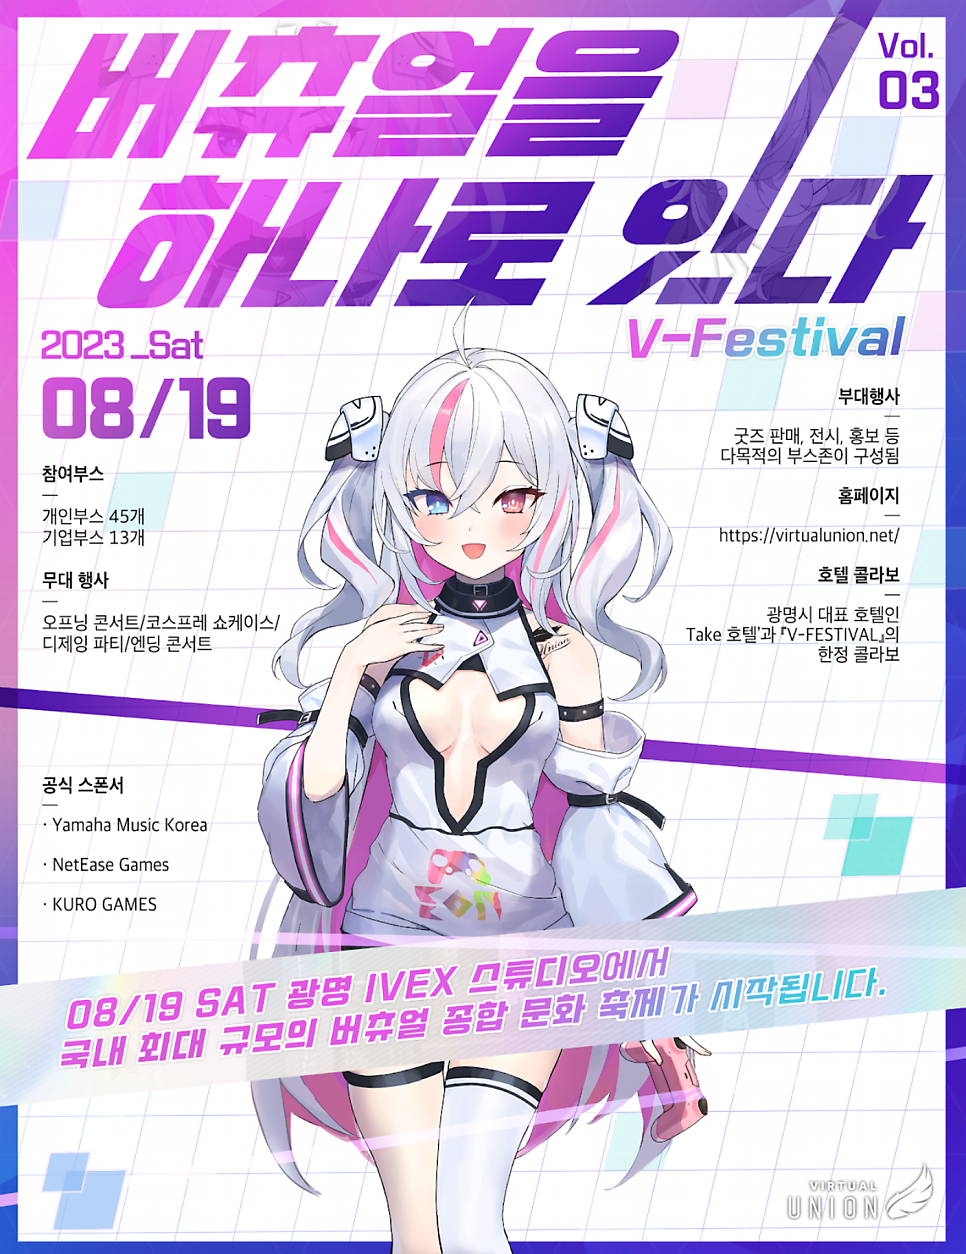 국내최대규모 버츄얼 이벤트 [V-FESTIVAL] 8월 19일 개최!